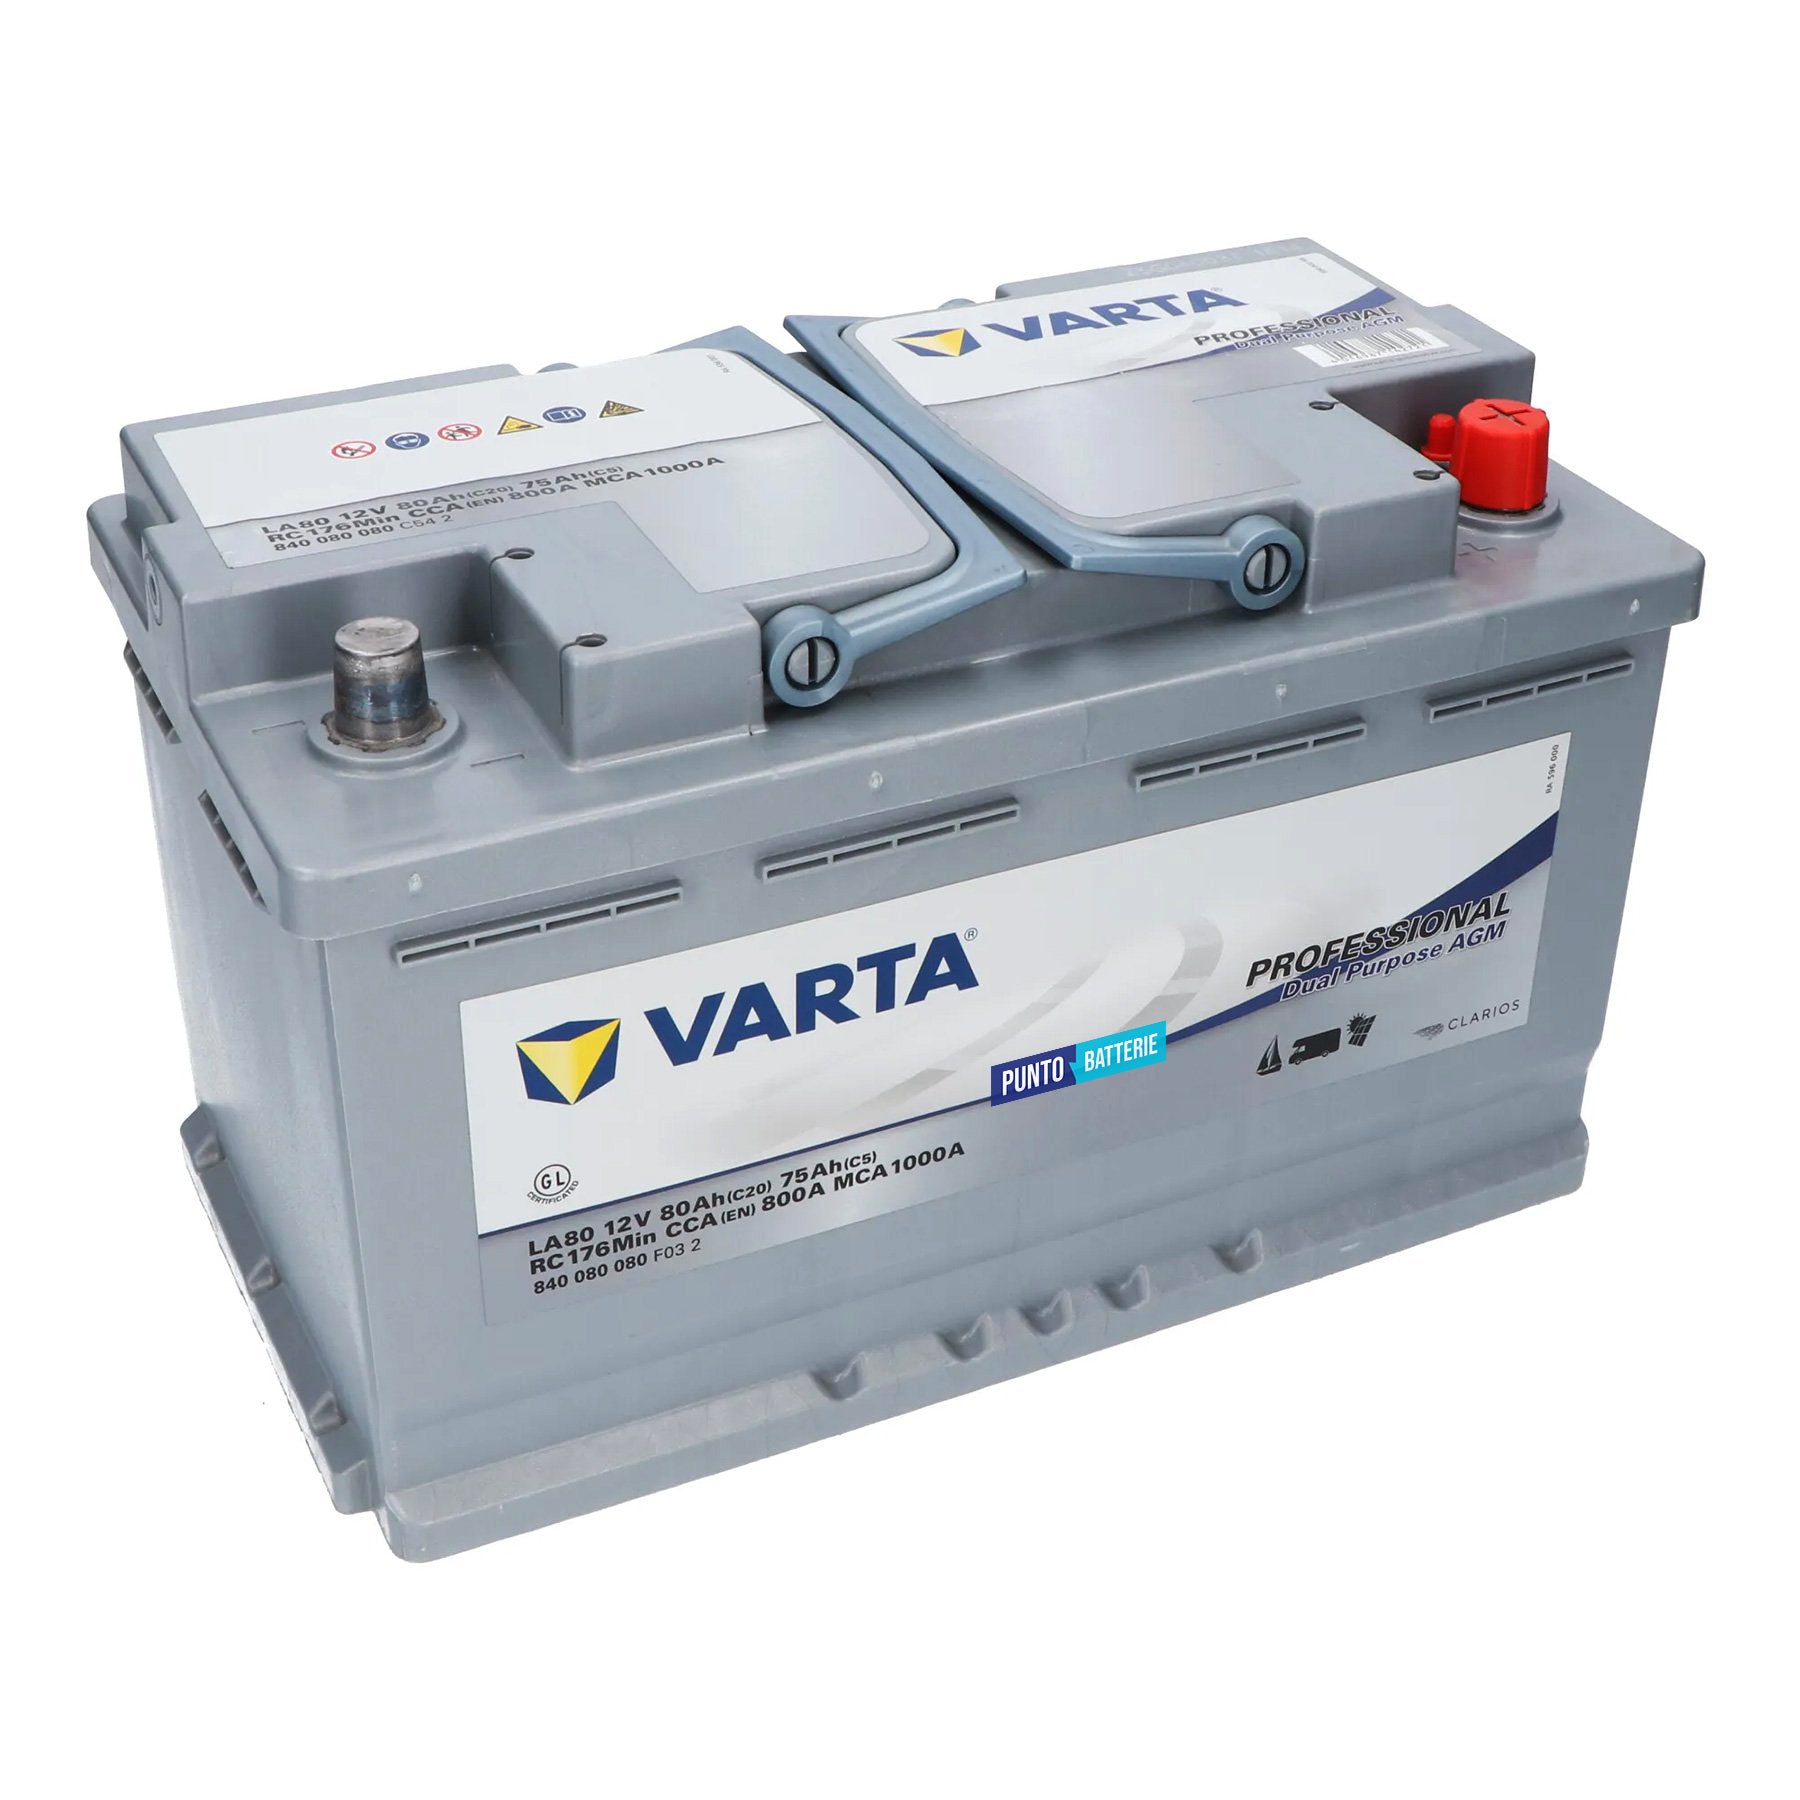 Varta E29 - 6V - 70AH - 300A (EN), 120,00 €